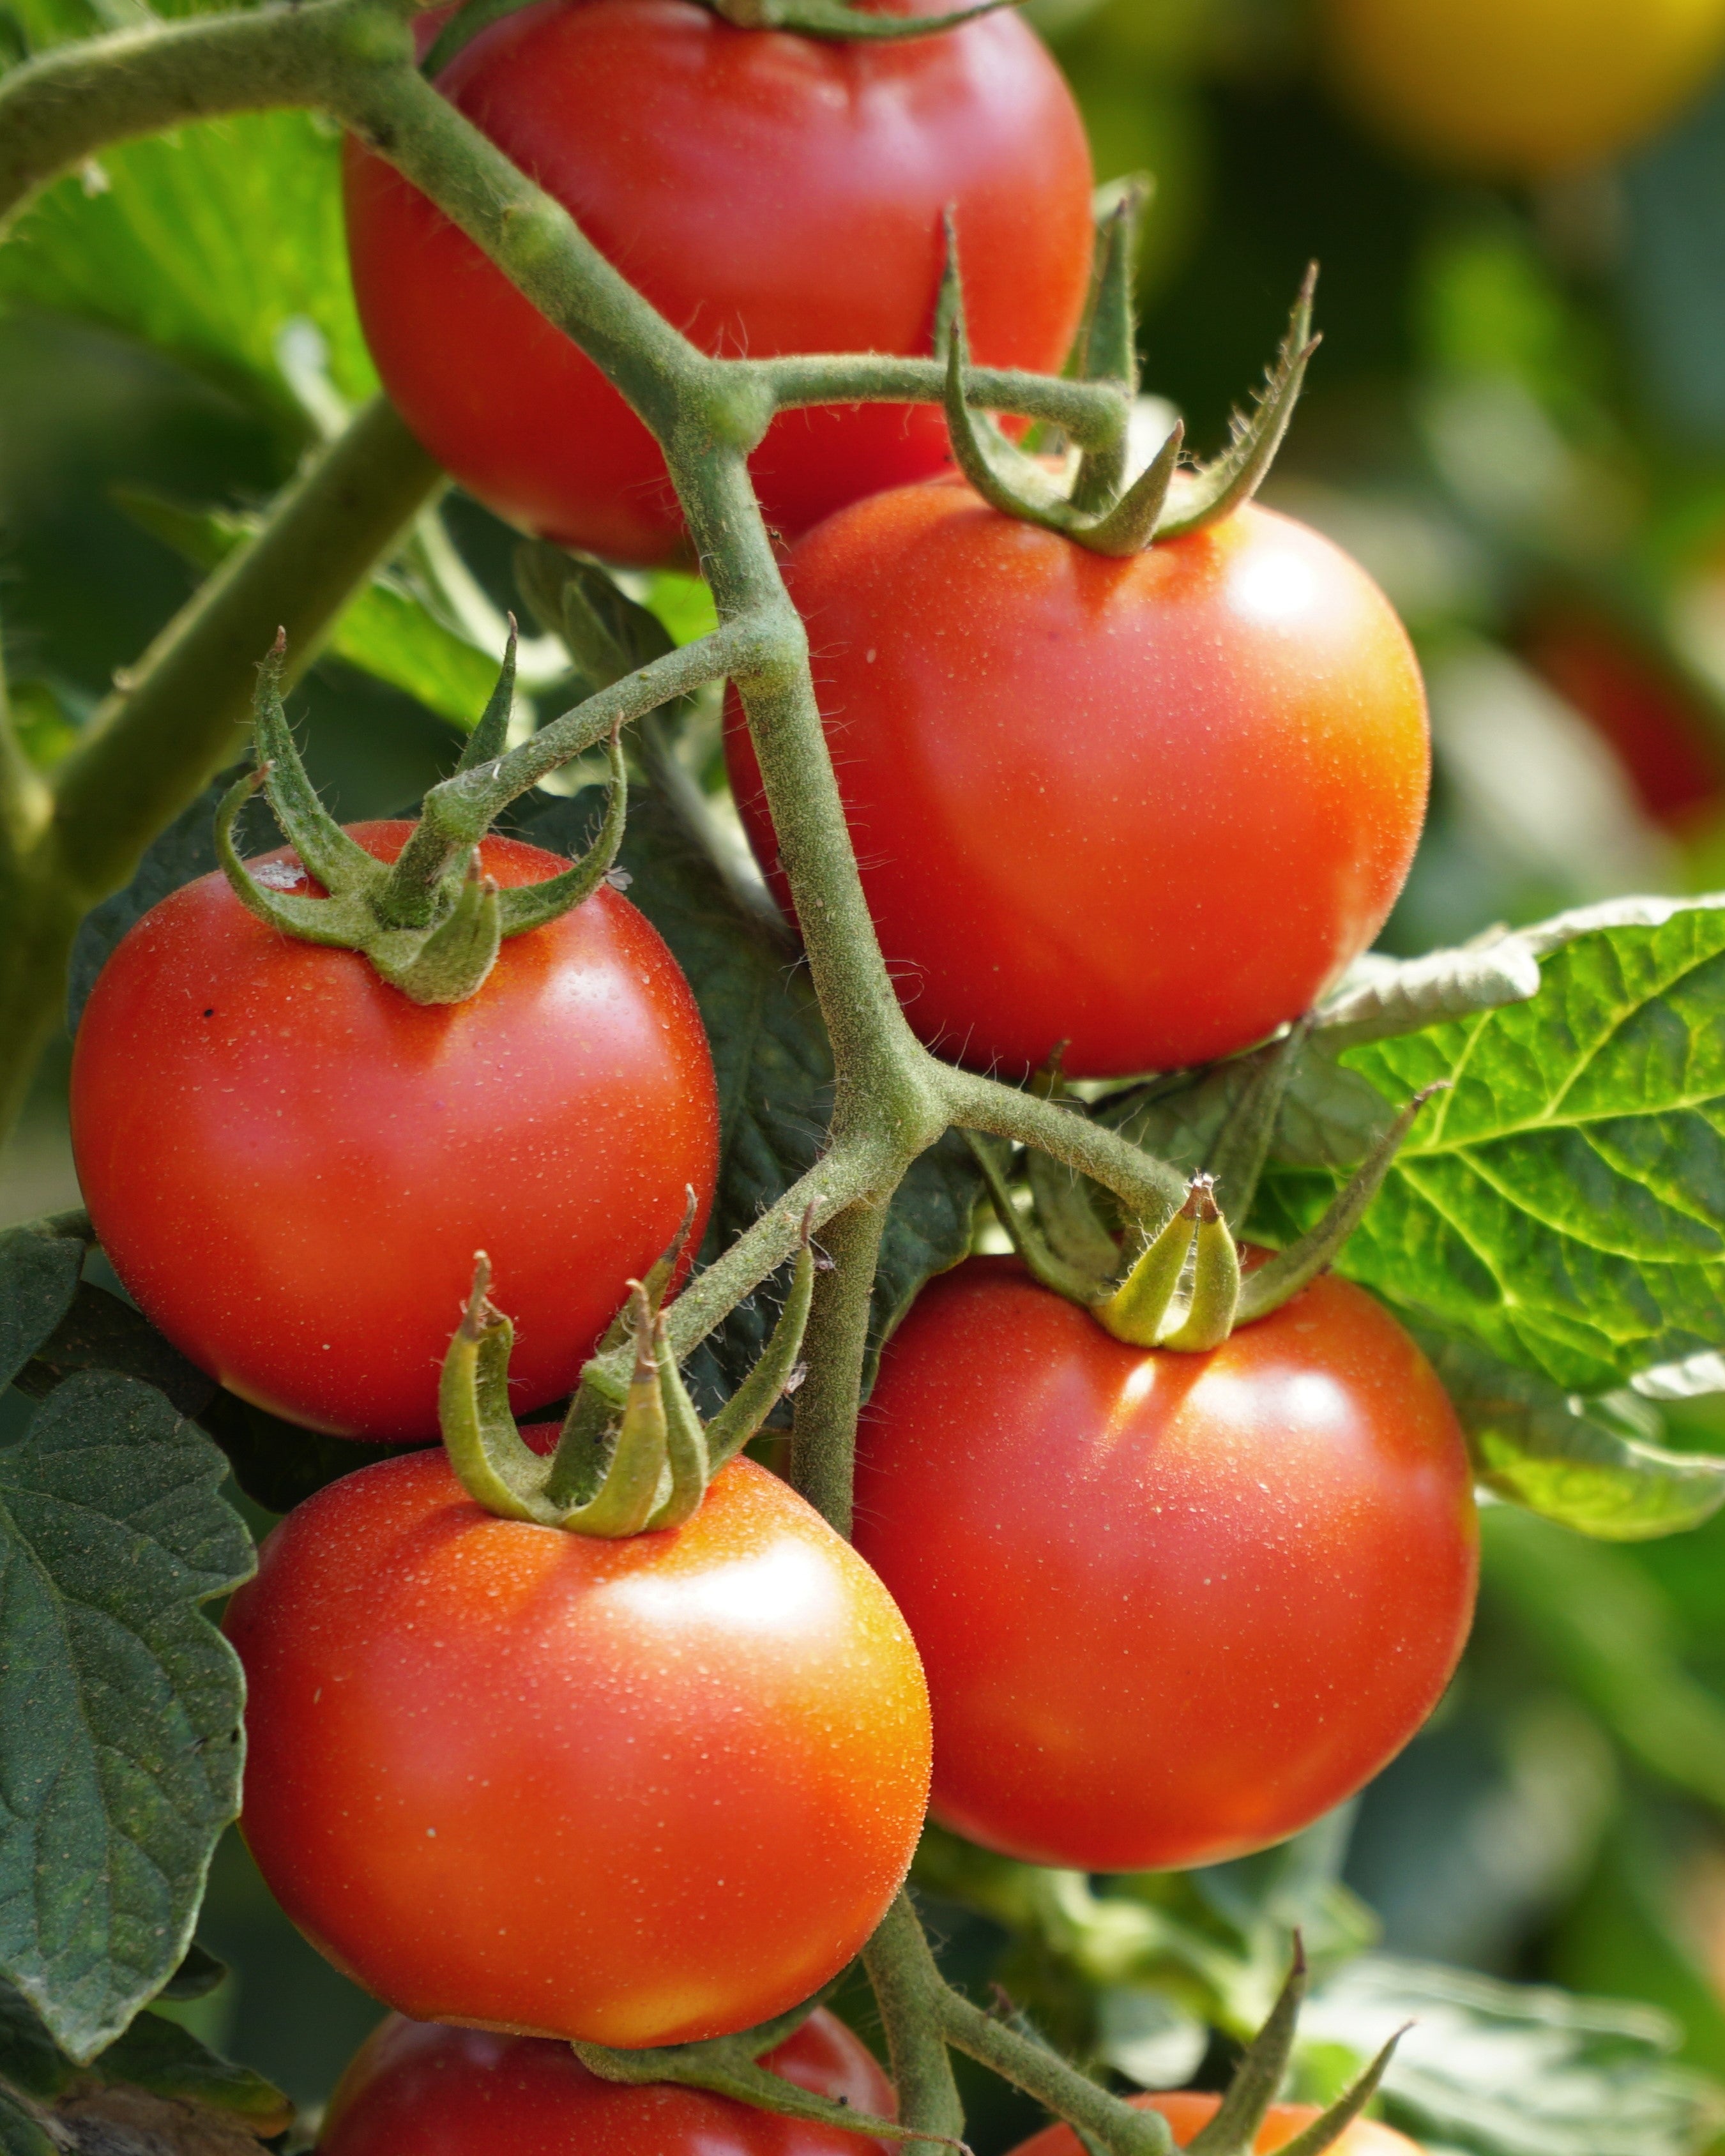 Seedling tomato “June”